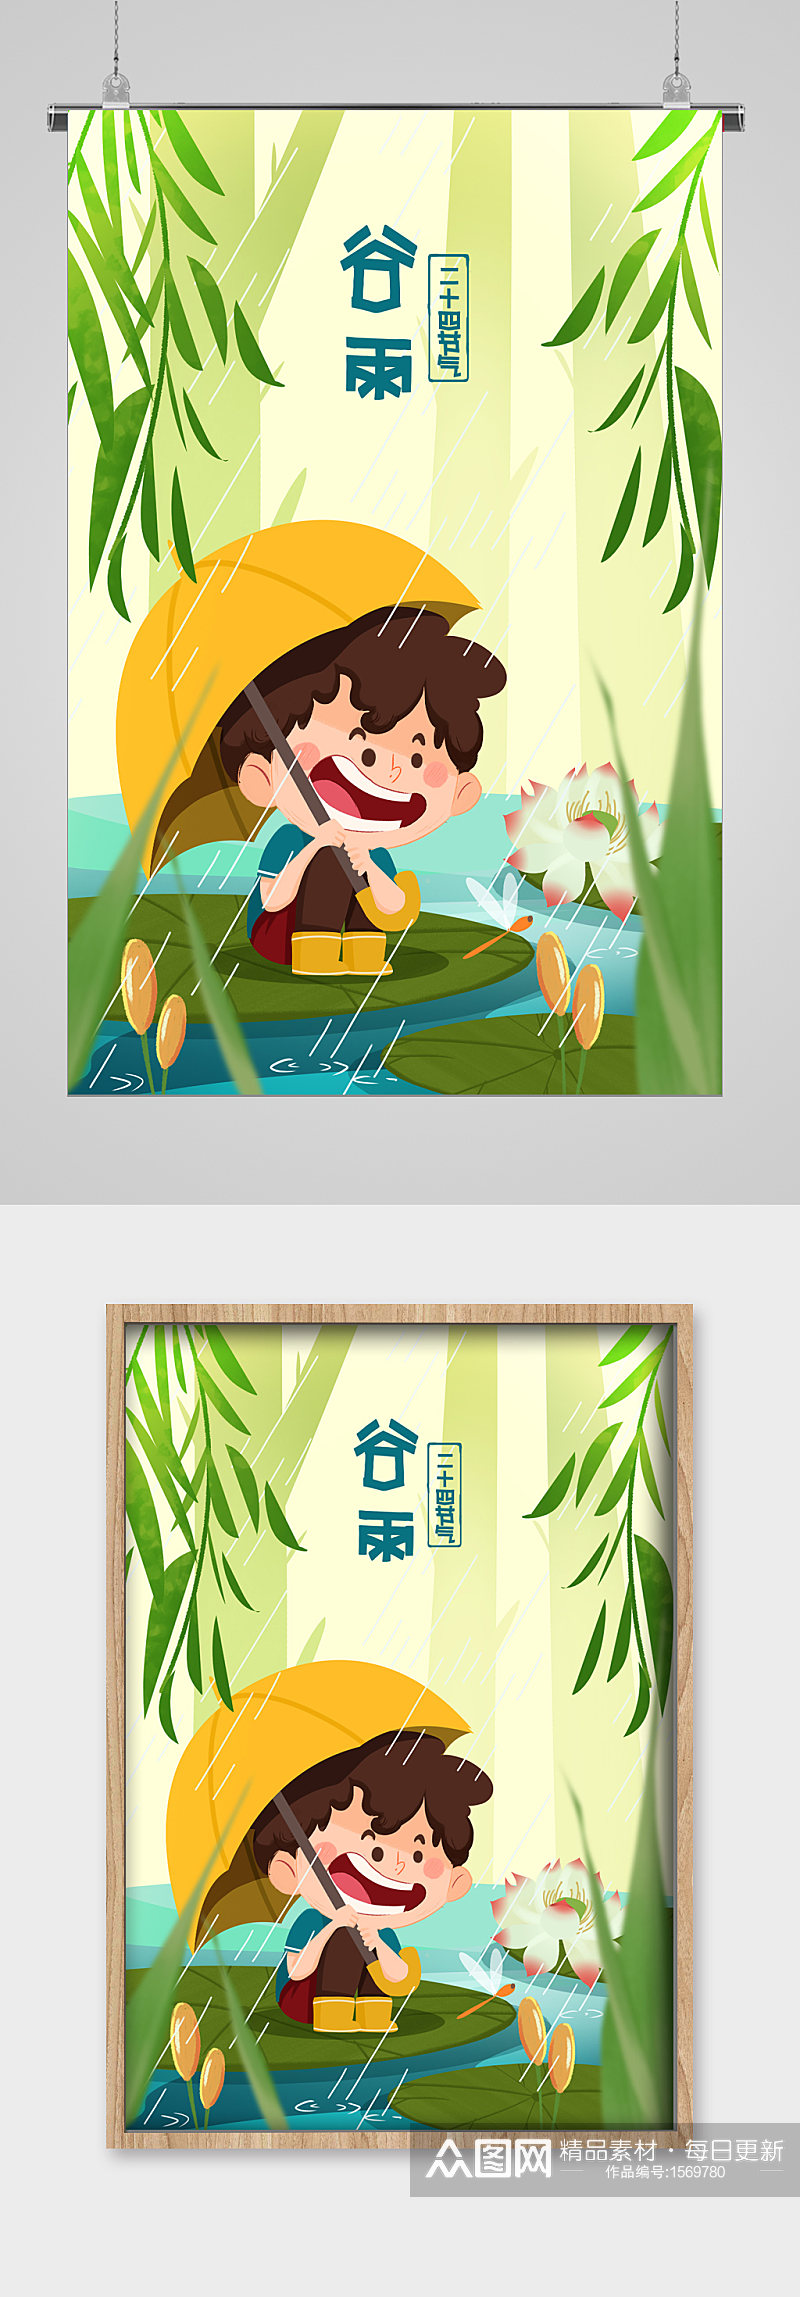 池塘旁的小男孩谷雨宣传插画素材